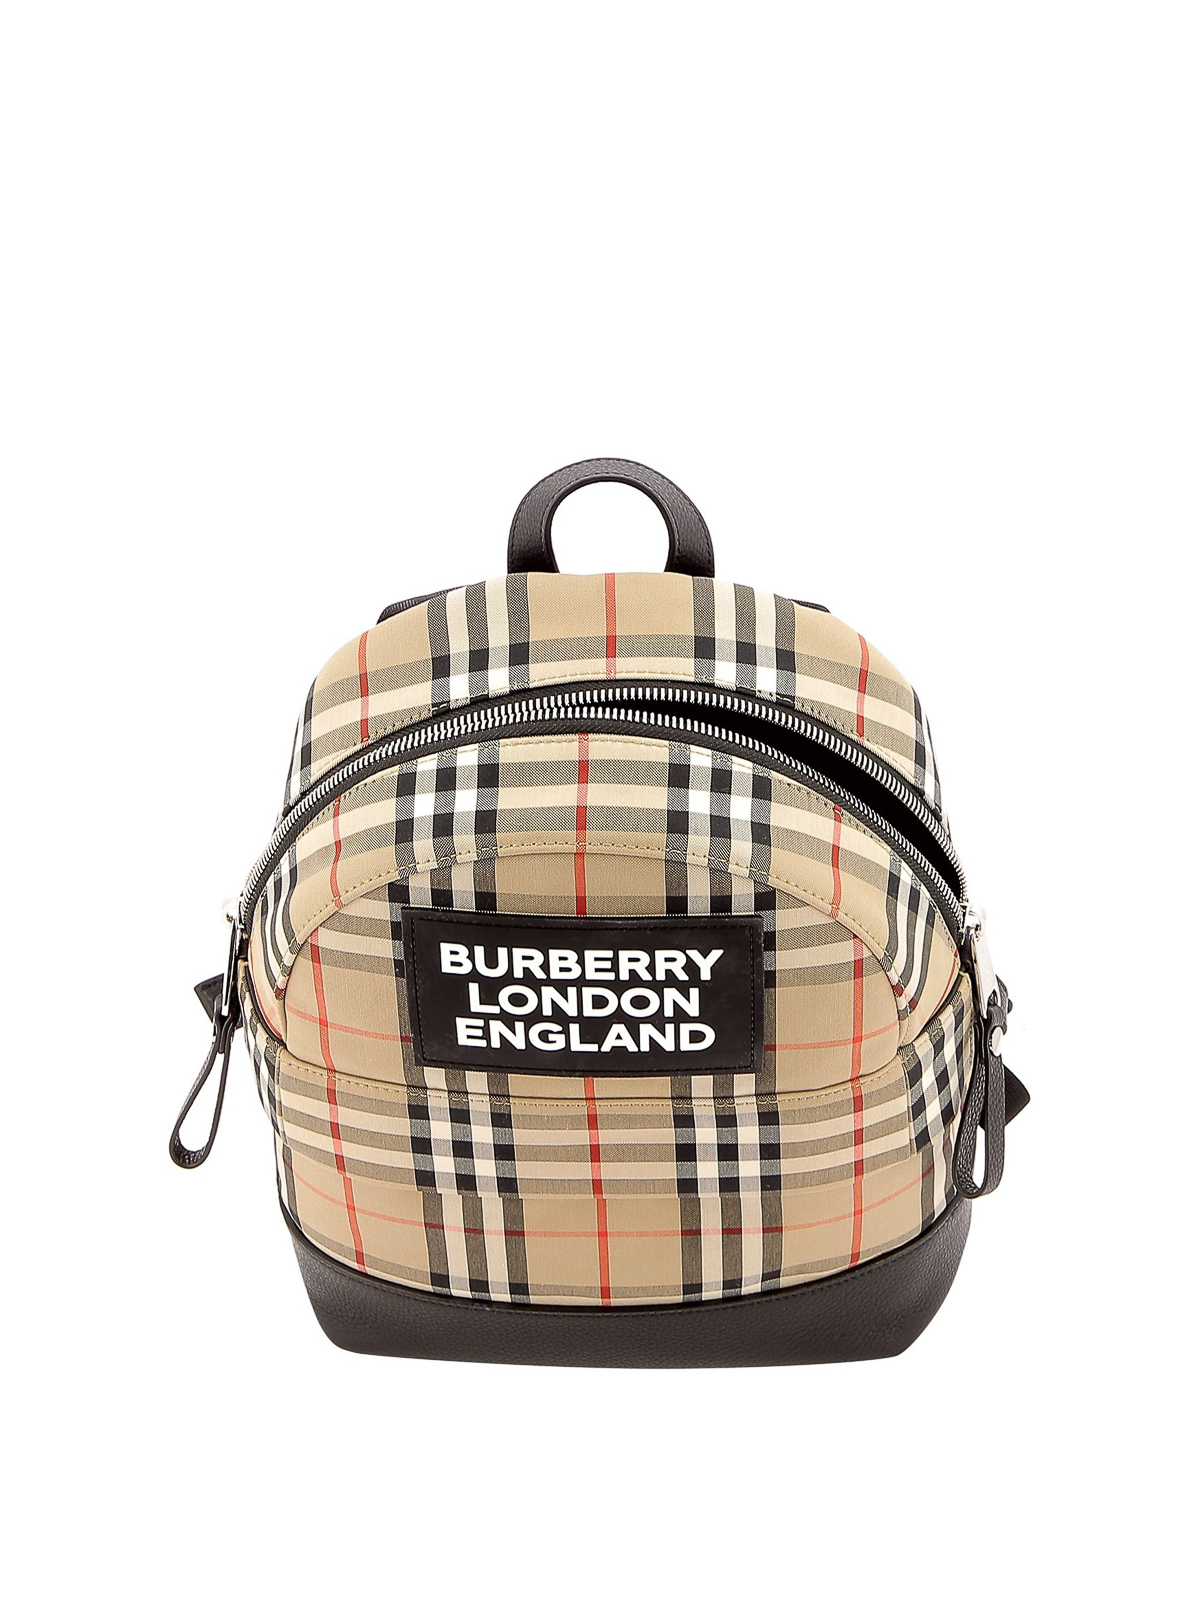 Backpacks Burberry - Nico backpack - 8031006 | Shop online at iKRIX